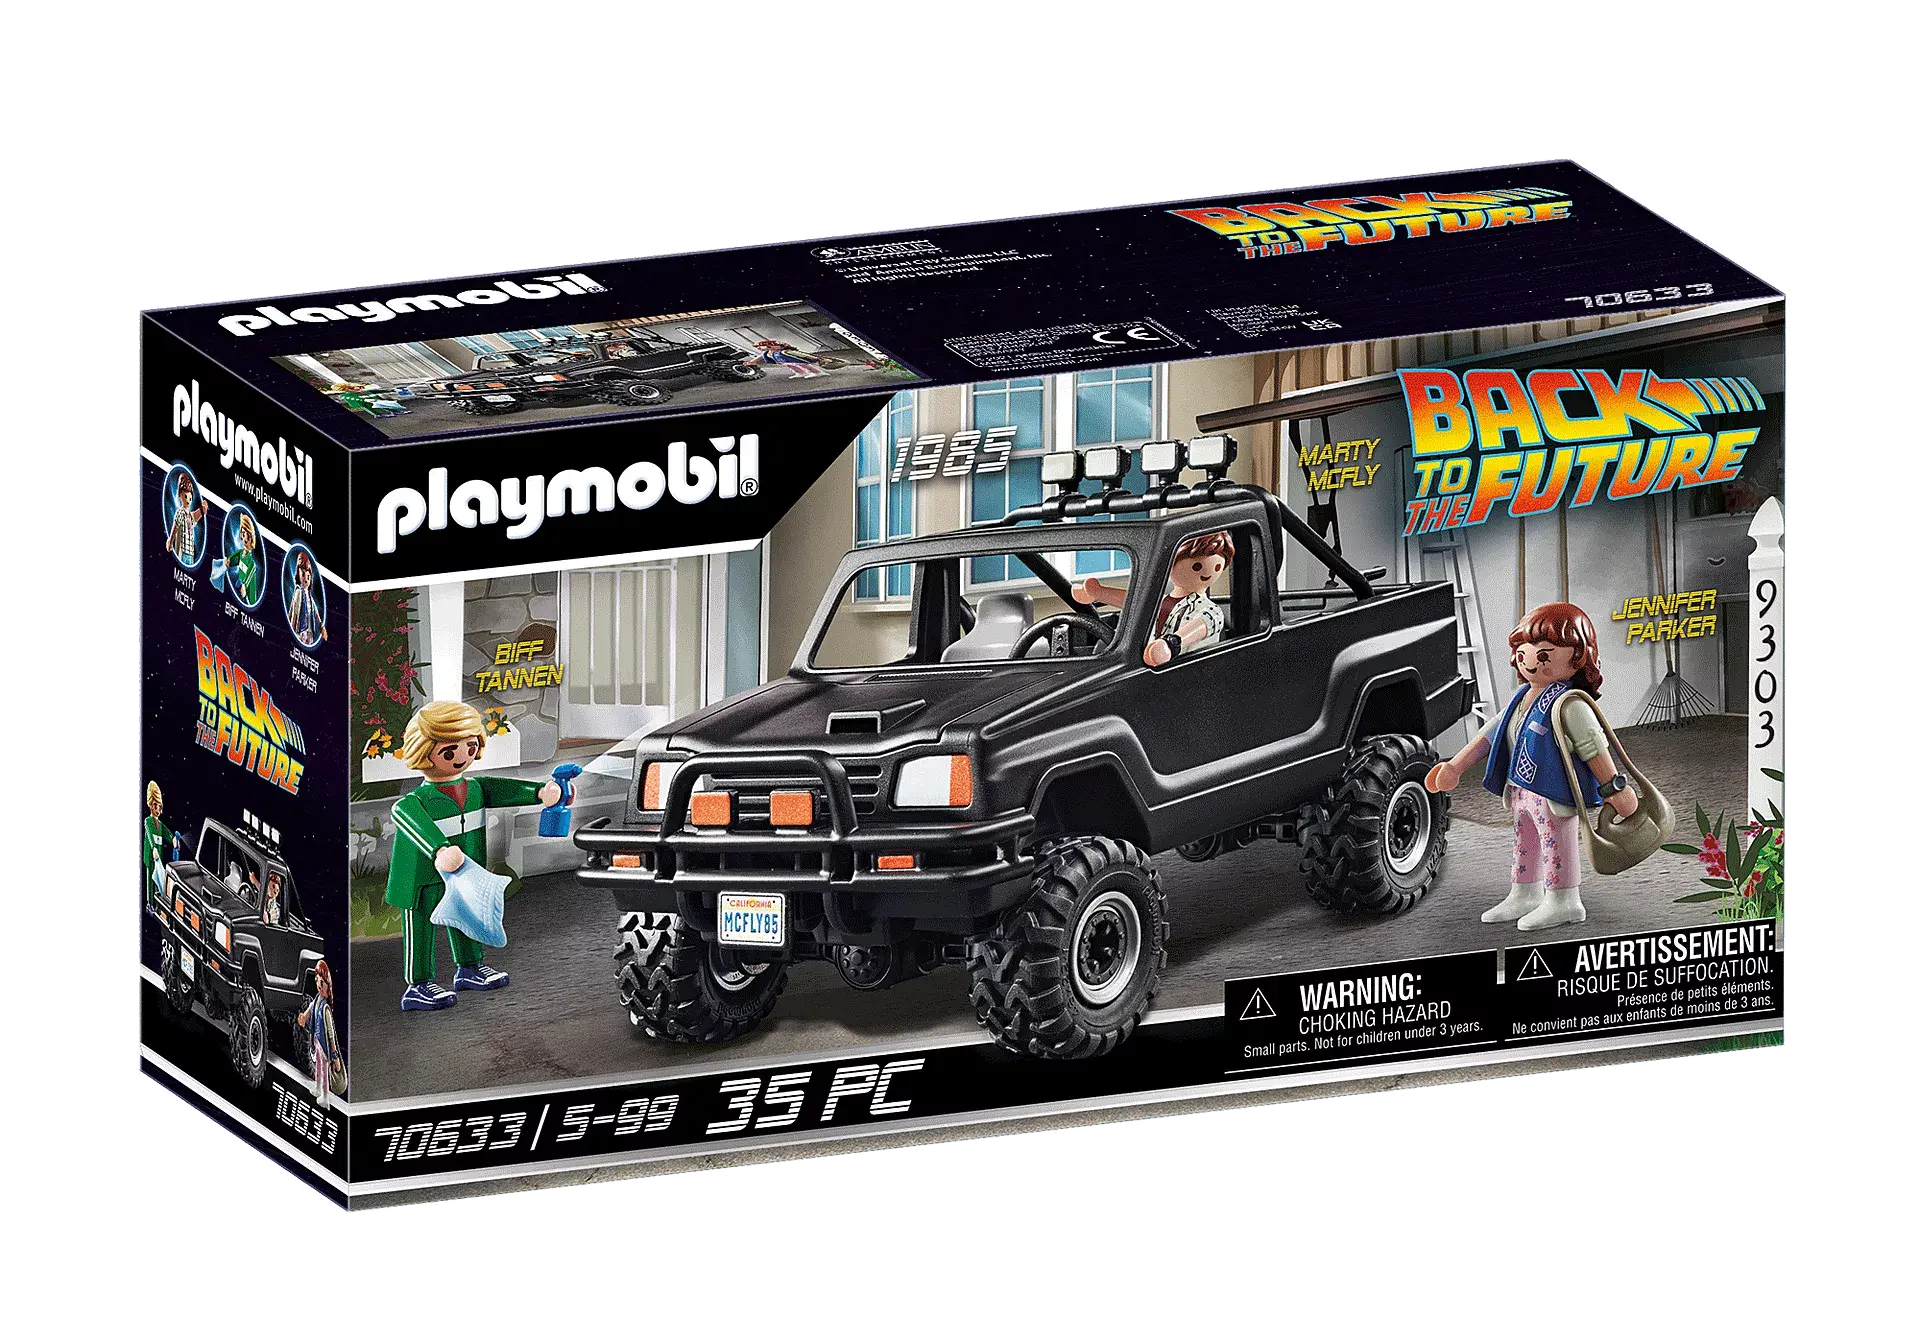 Playmobil 70924 - Knight Rider - K.I.T.T. - Maitre des Jeux